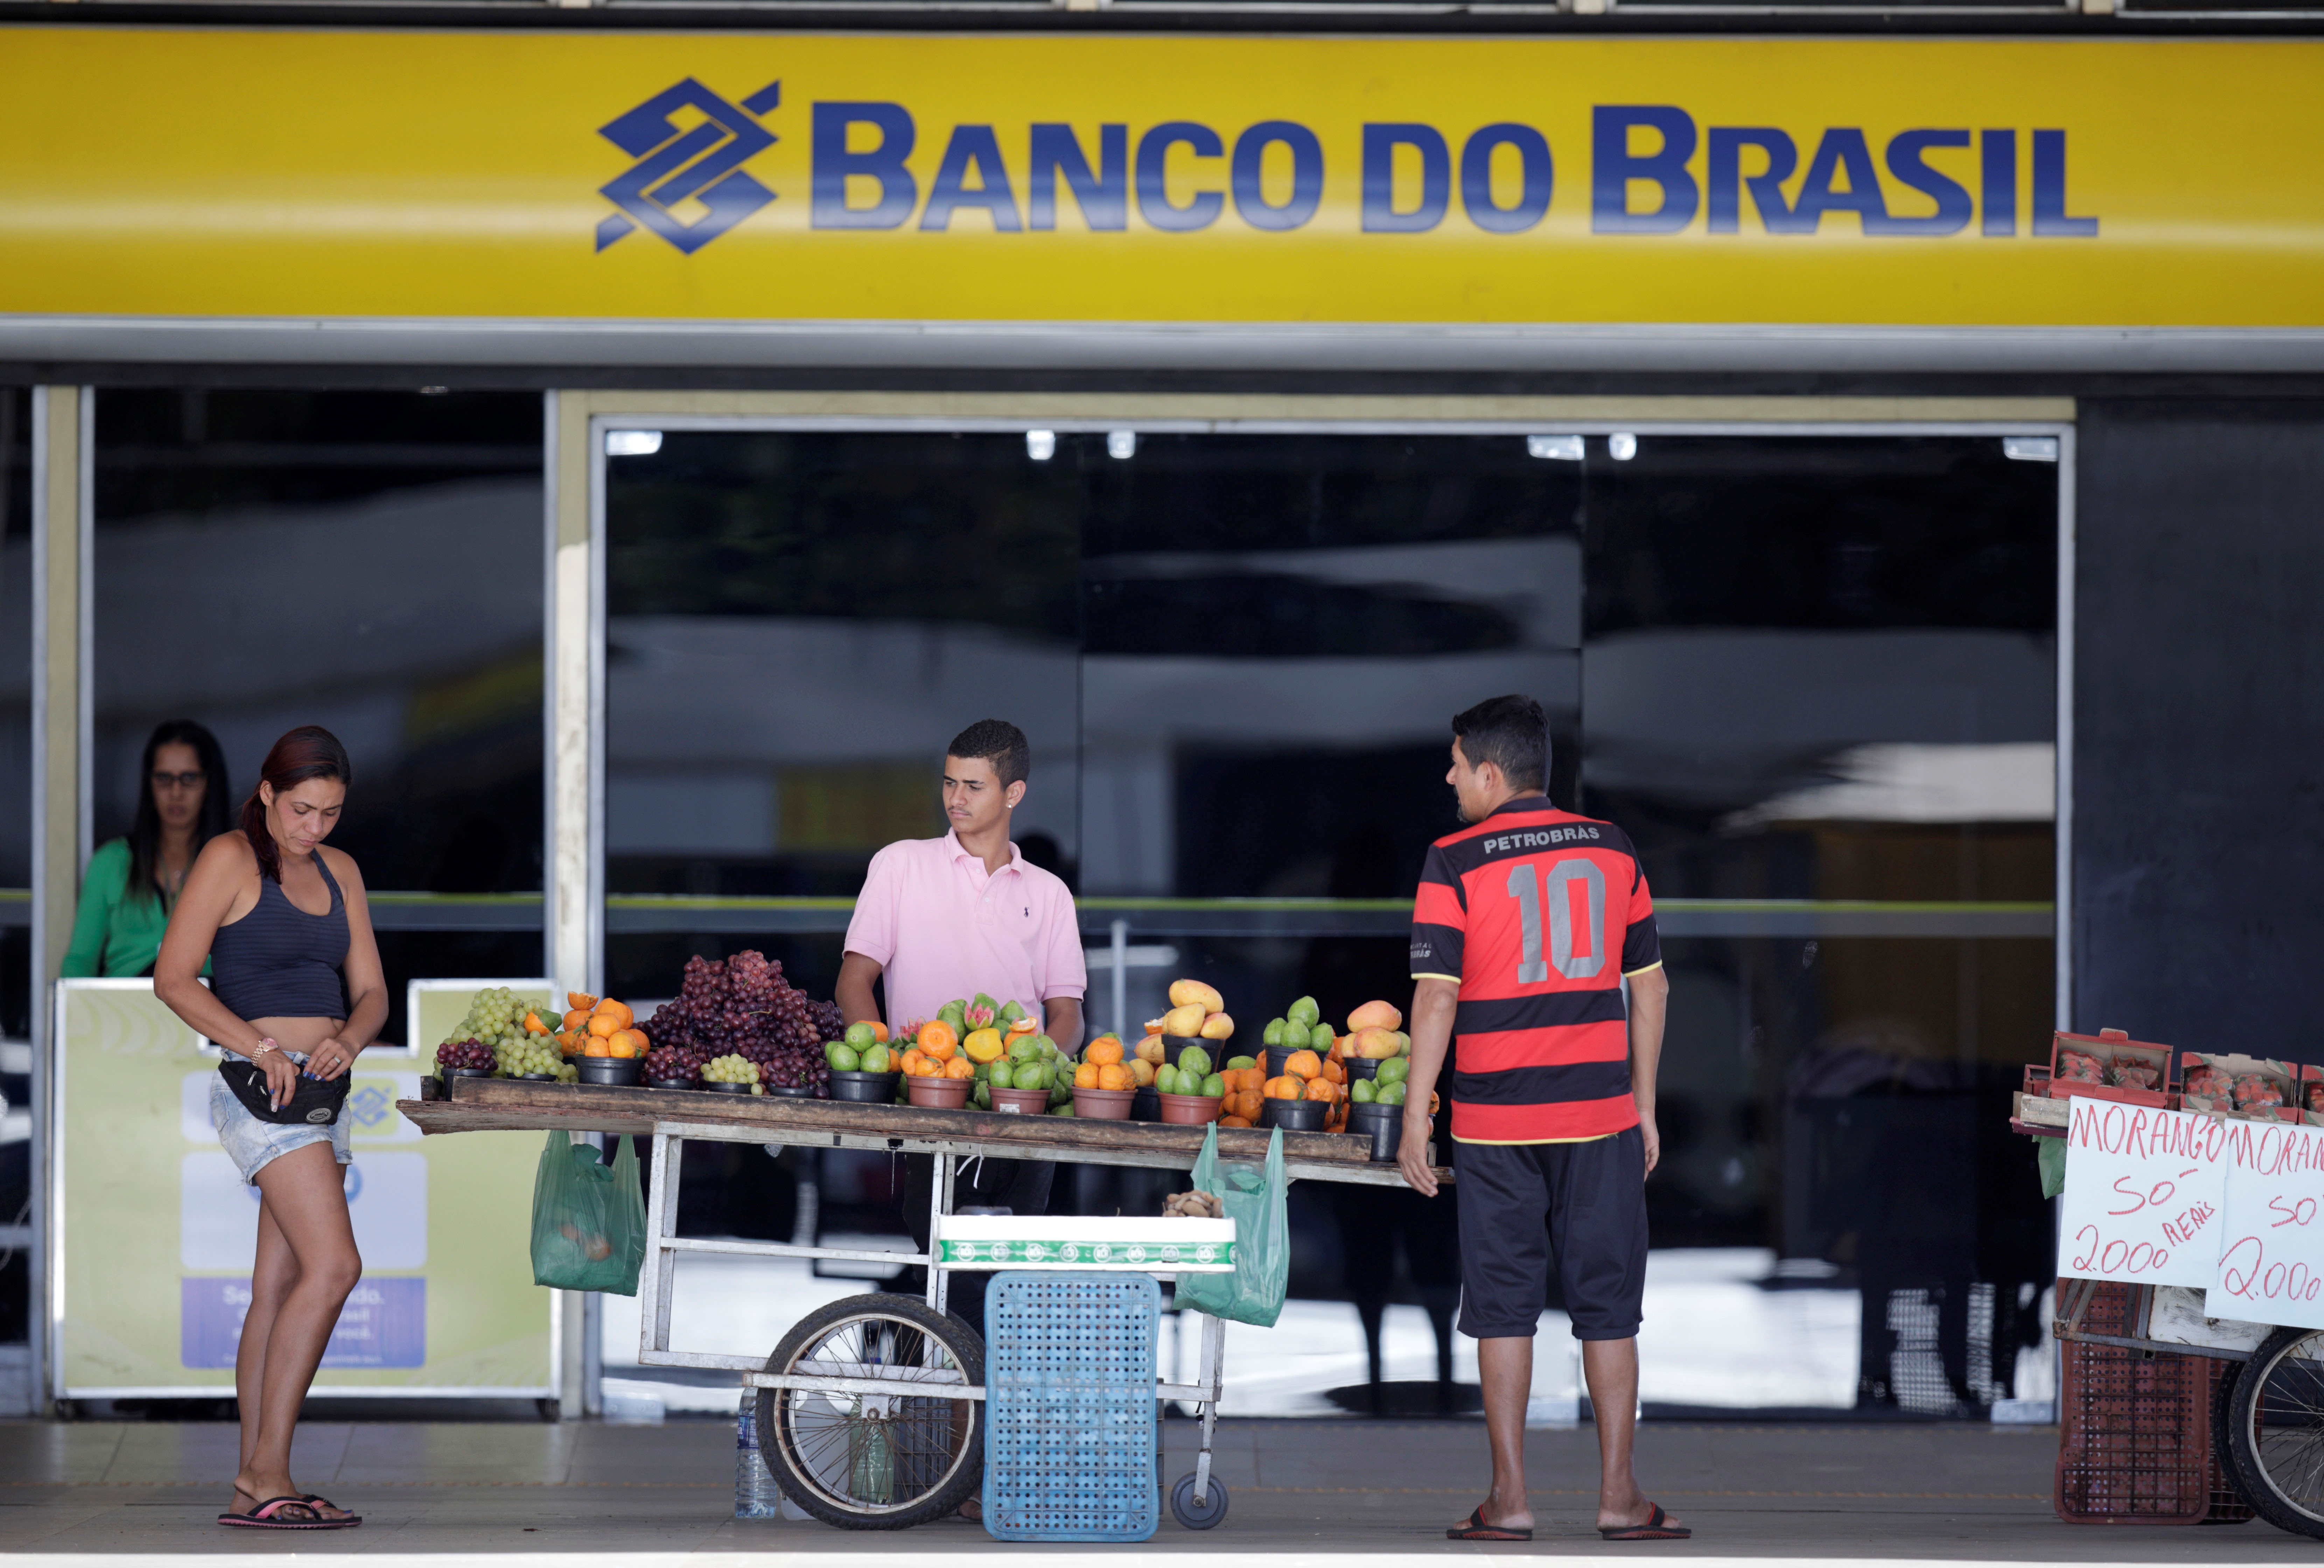 Street vendors are seen in front of a Banco do Brasil branch in Brasilia